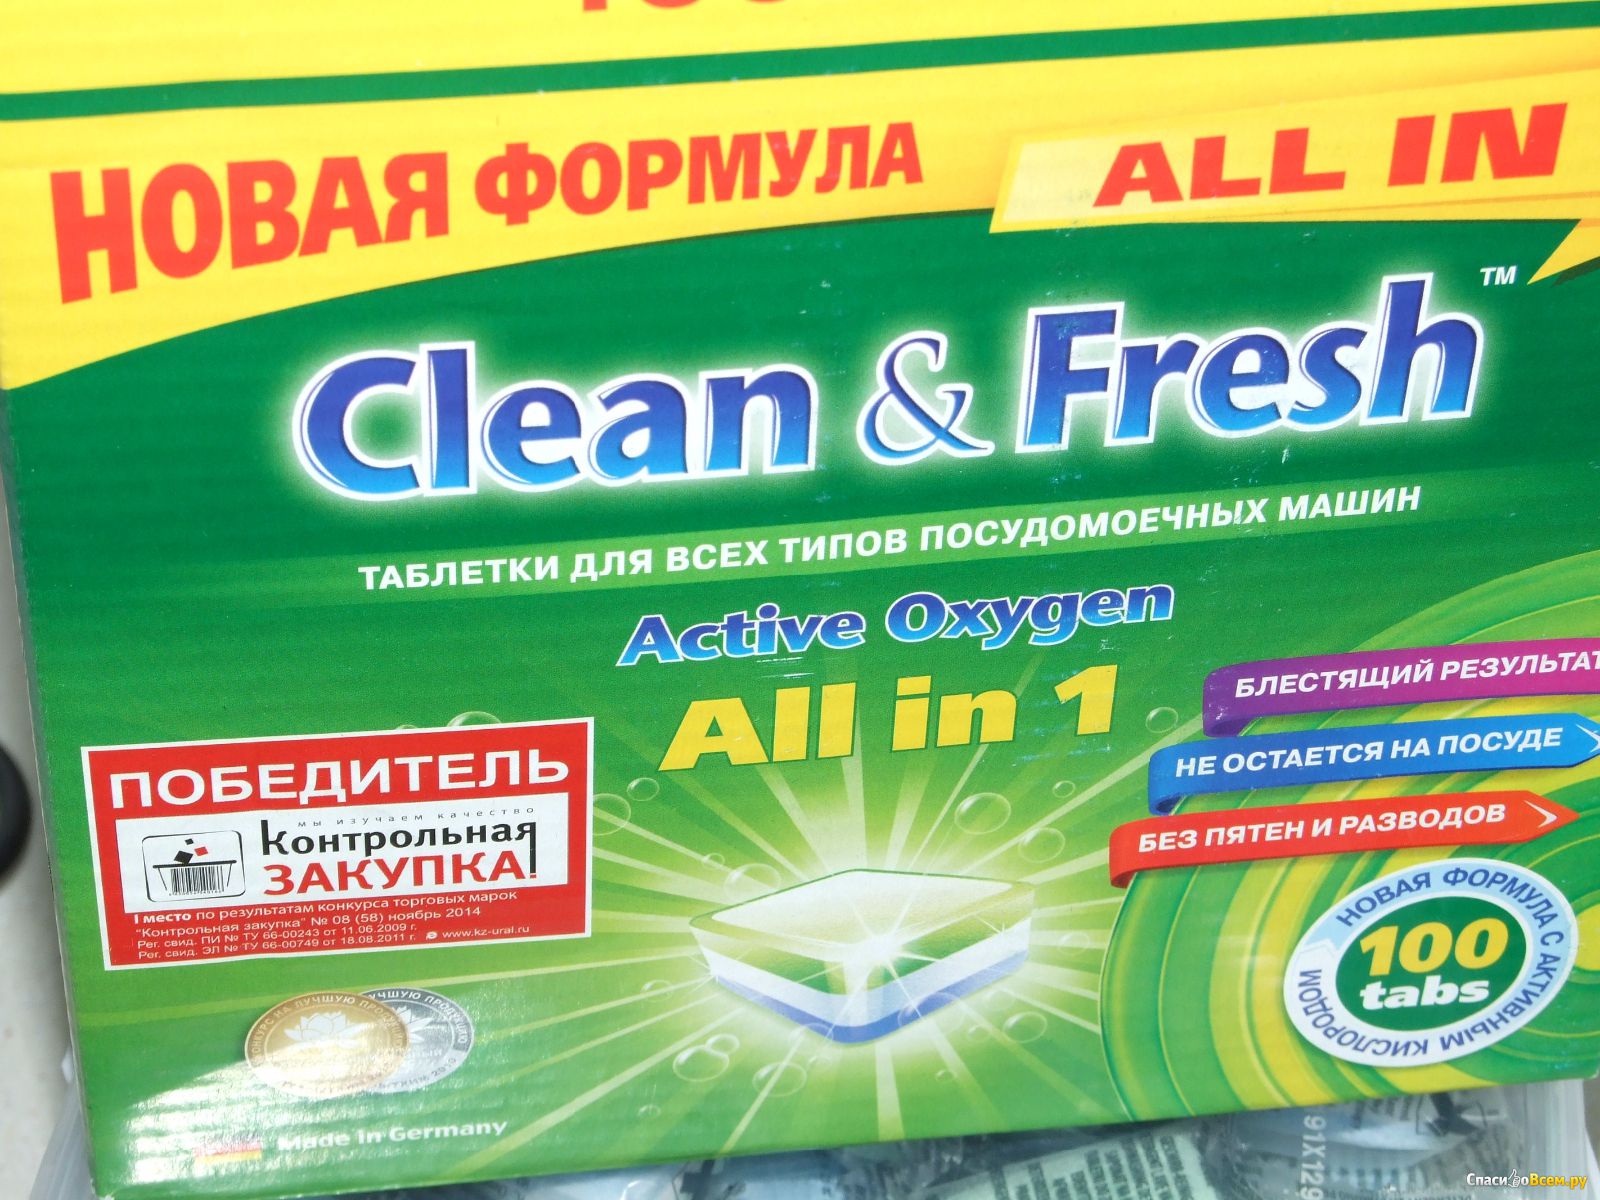 Clean fresh all in 1. Таблетки для ПММ "clean&Fresh" allin1. Таблетки для ПММ "clean&Fresh" all in 1. Clean Fresh таблетки для посудомоечных машин. Таблетки для посудомоечной машины Клин энд Фреш.